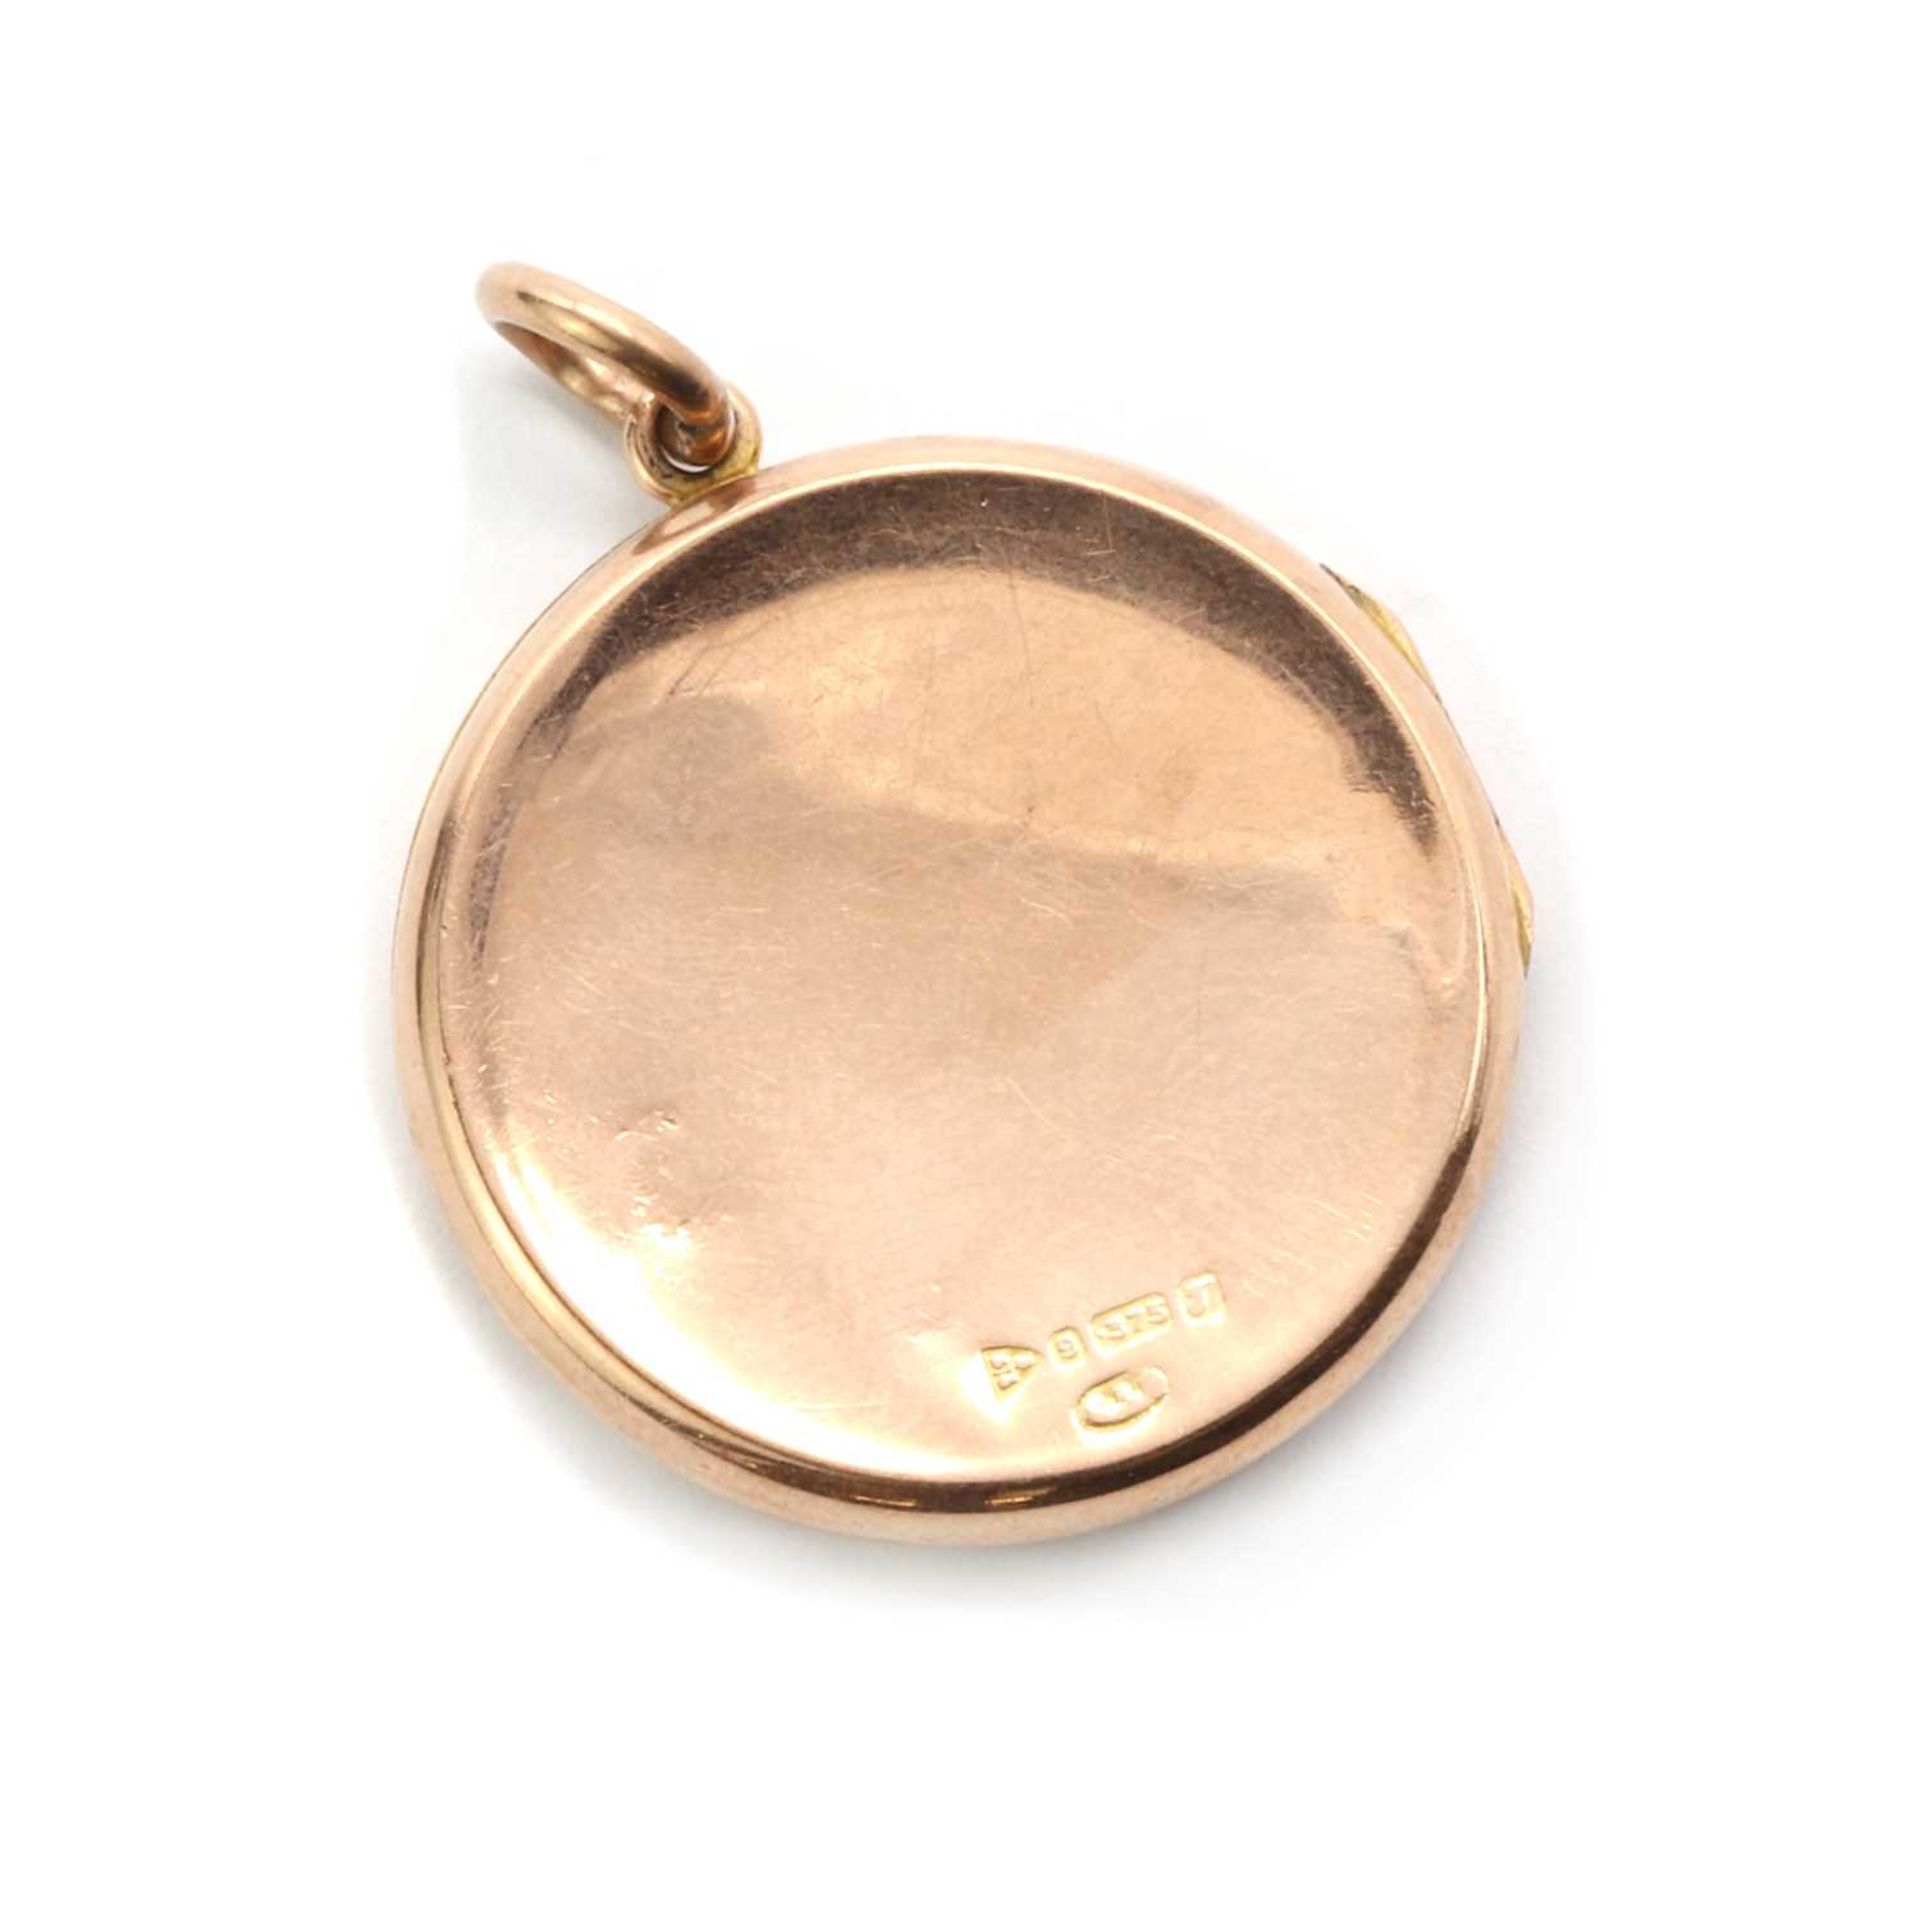 An Edwardian 9ct gold locket, - Image 2 of 2